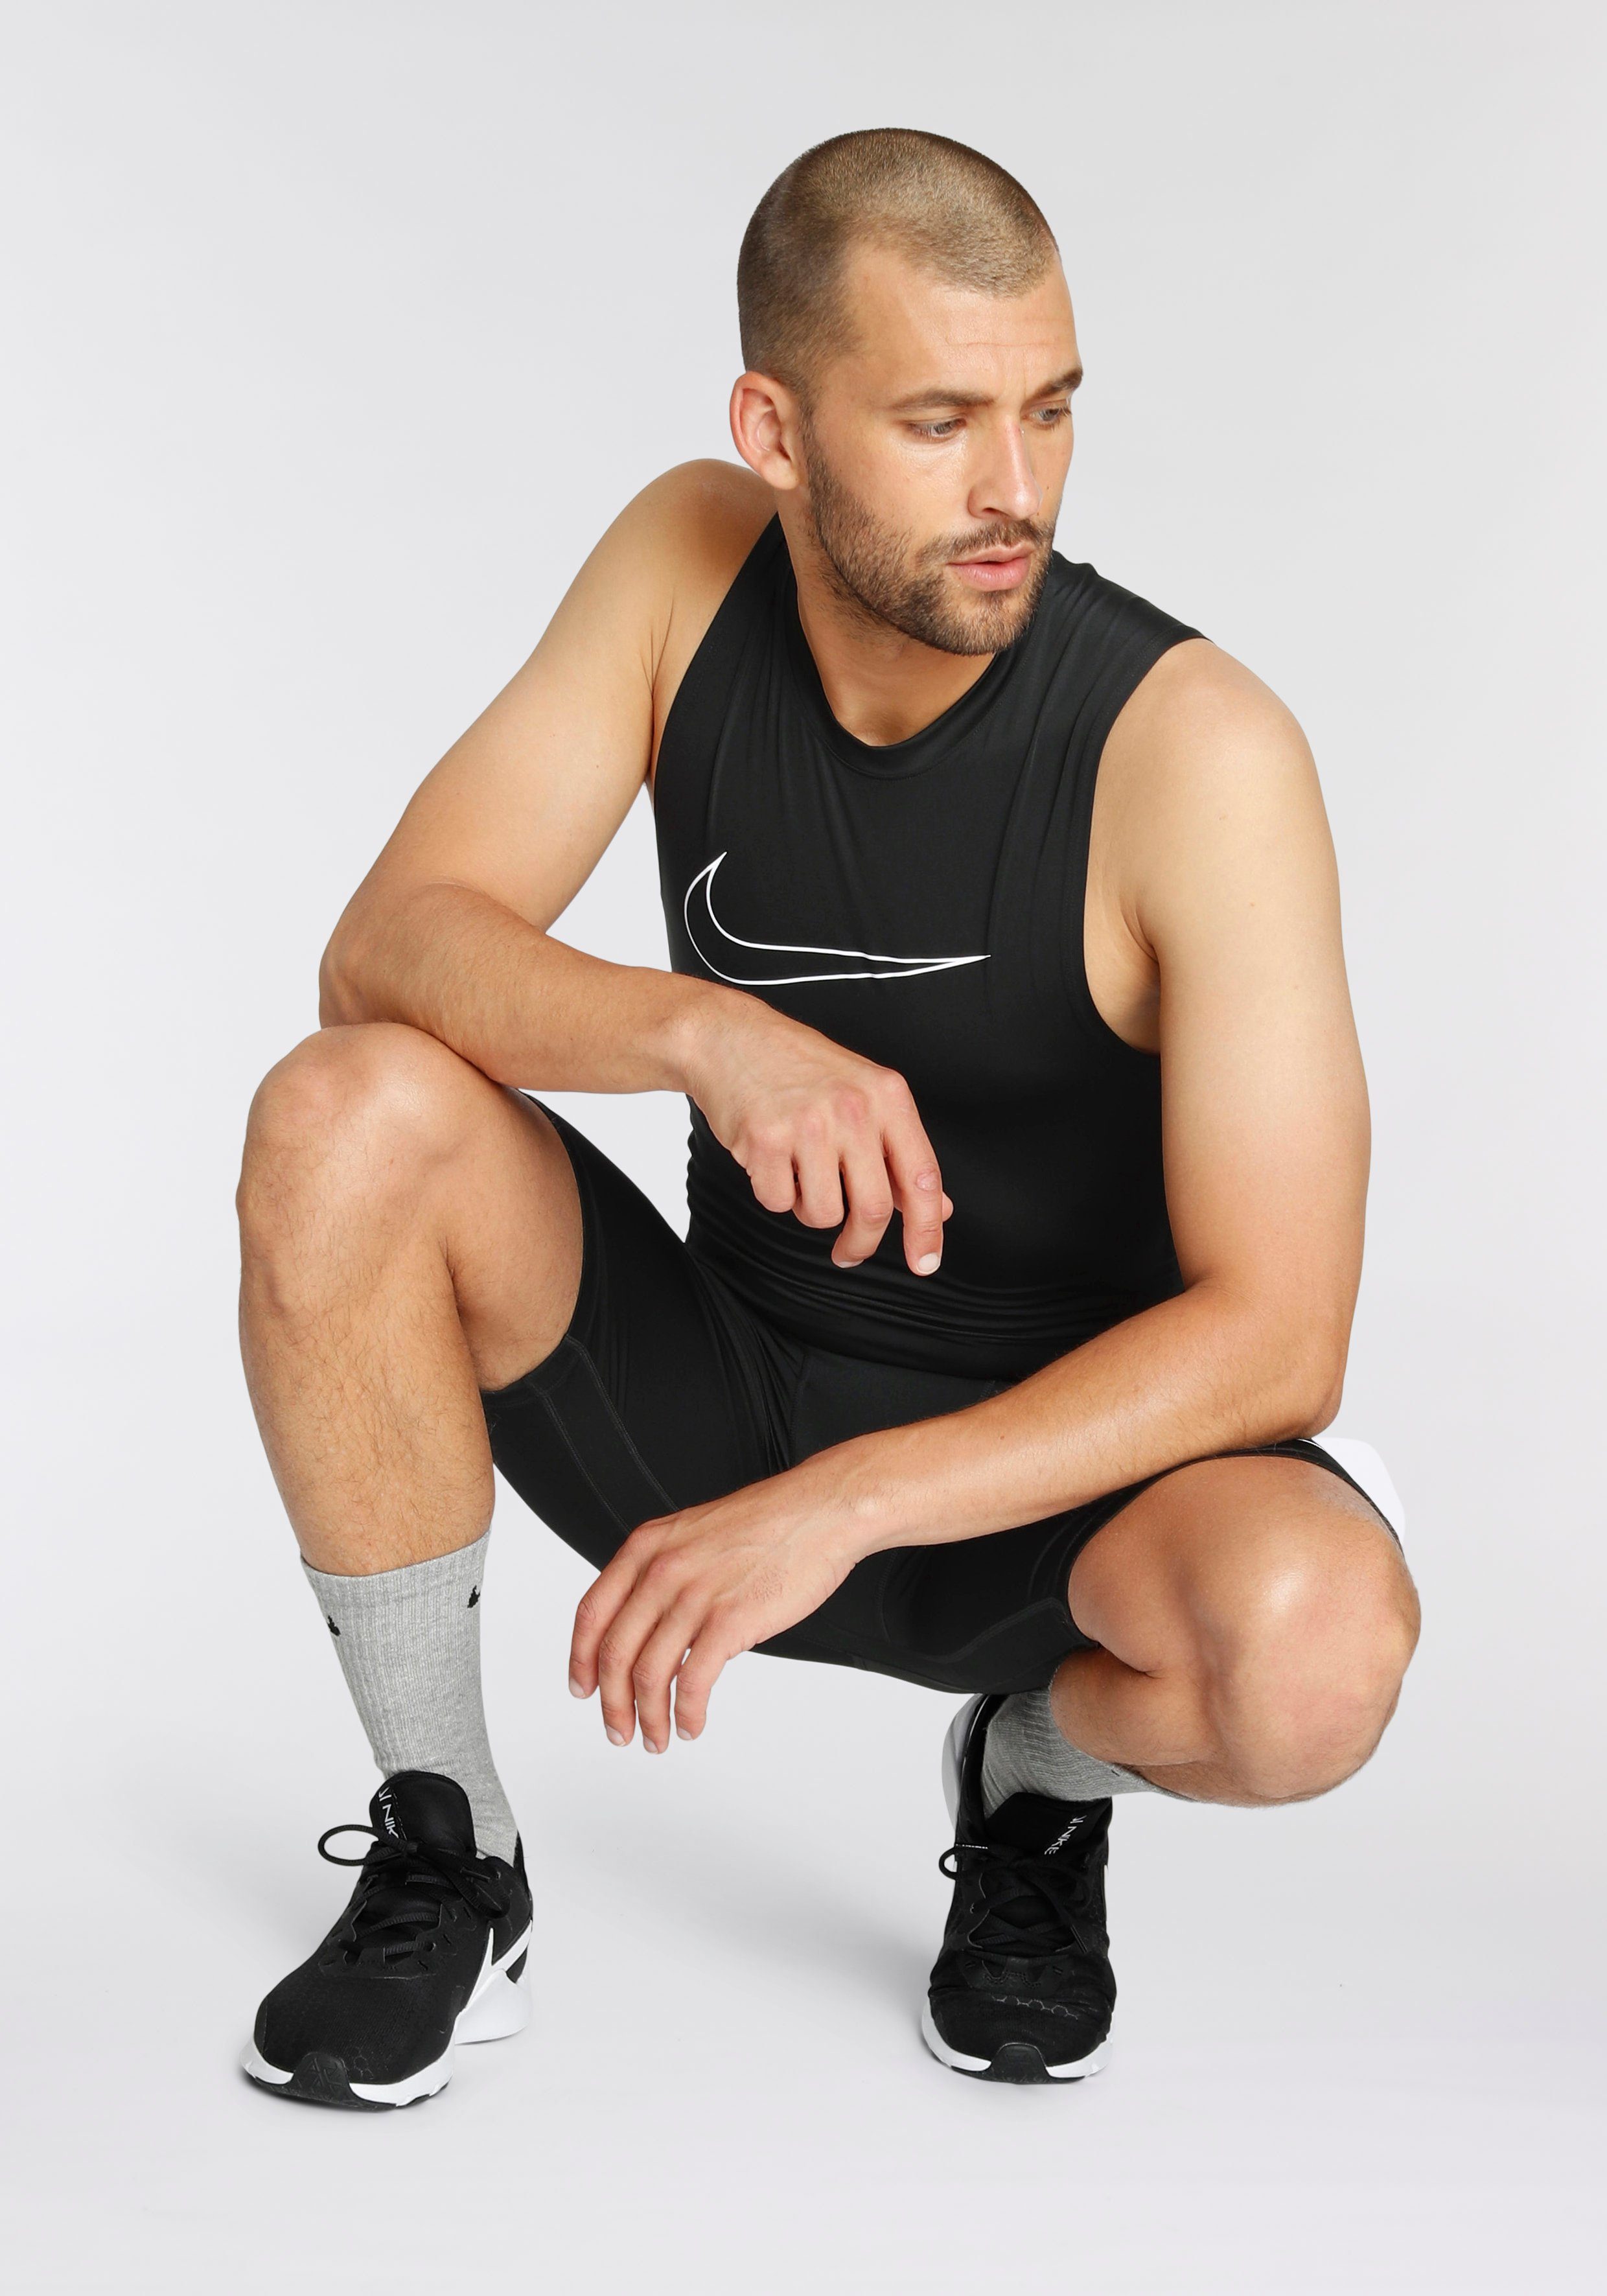 Nike Tanktop PRO DRI-FIT MENS SLEEVELESS FIT TIGHT